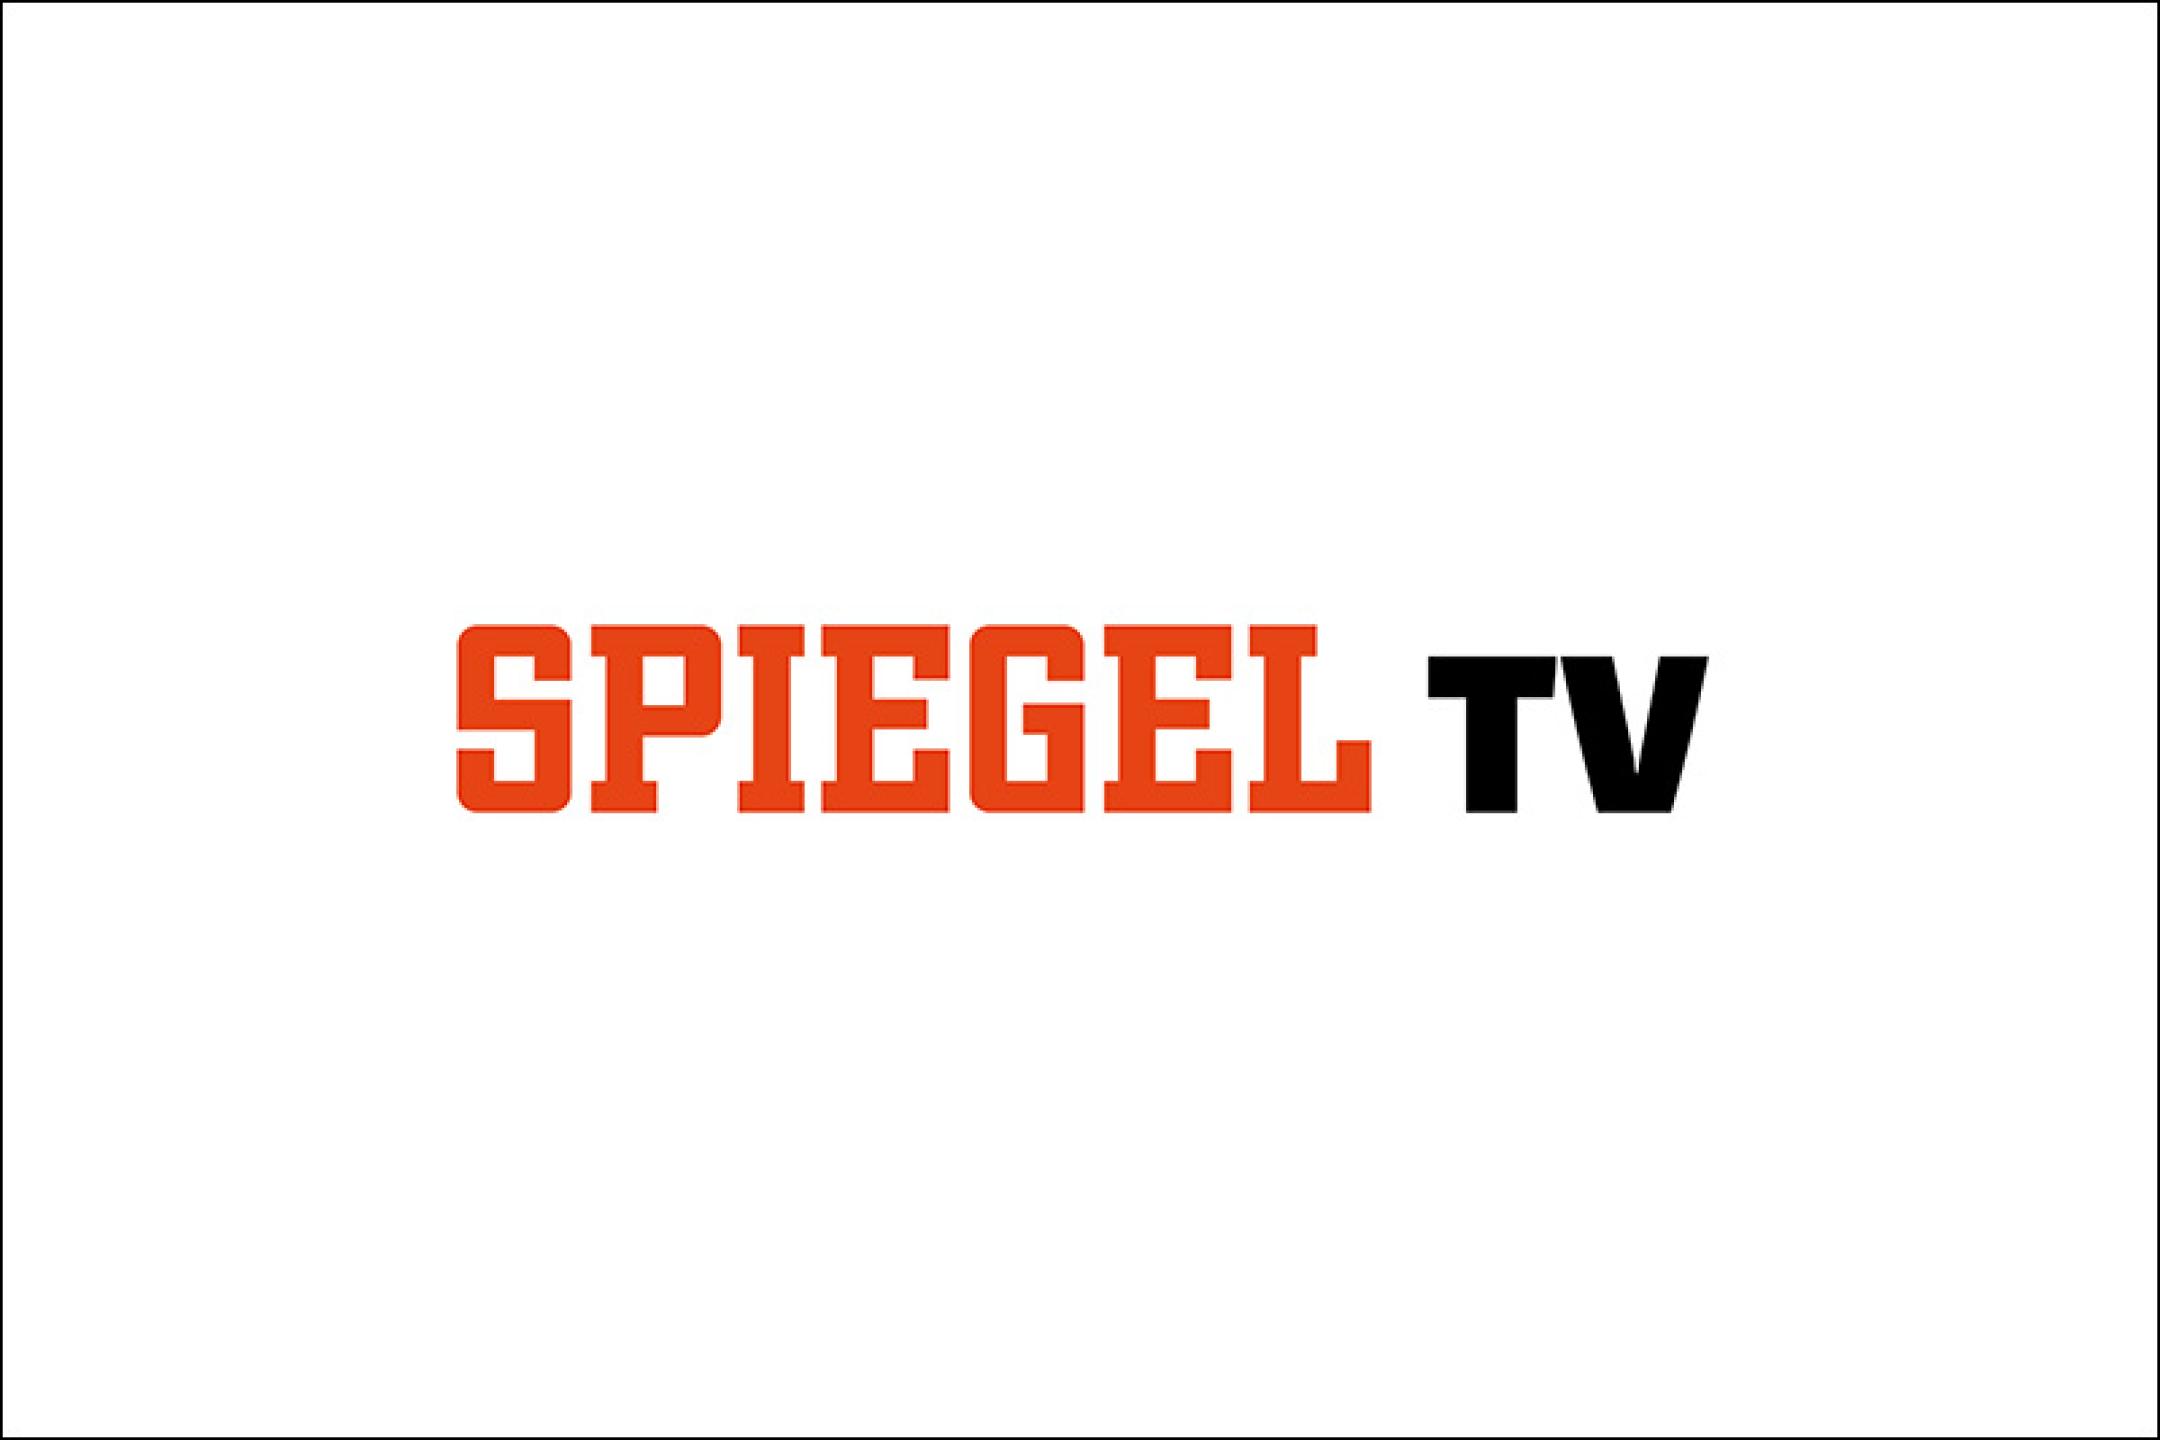 Logo Spiegel TV on white background